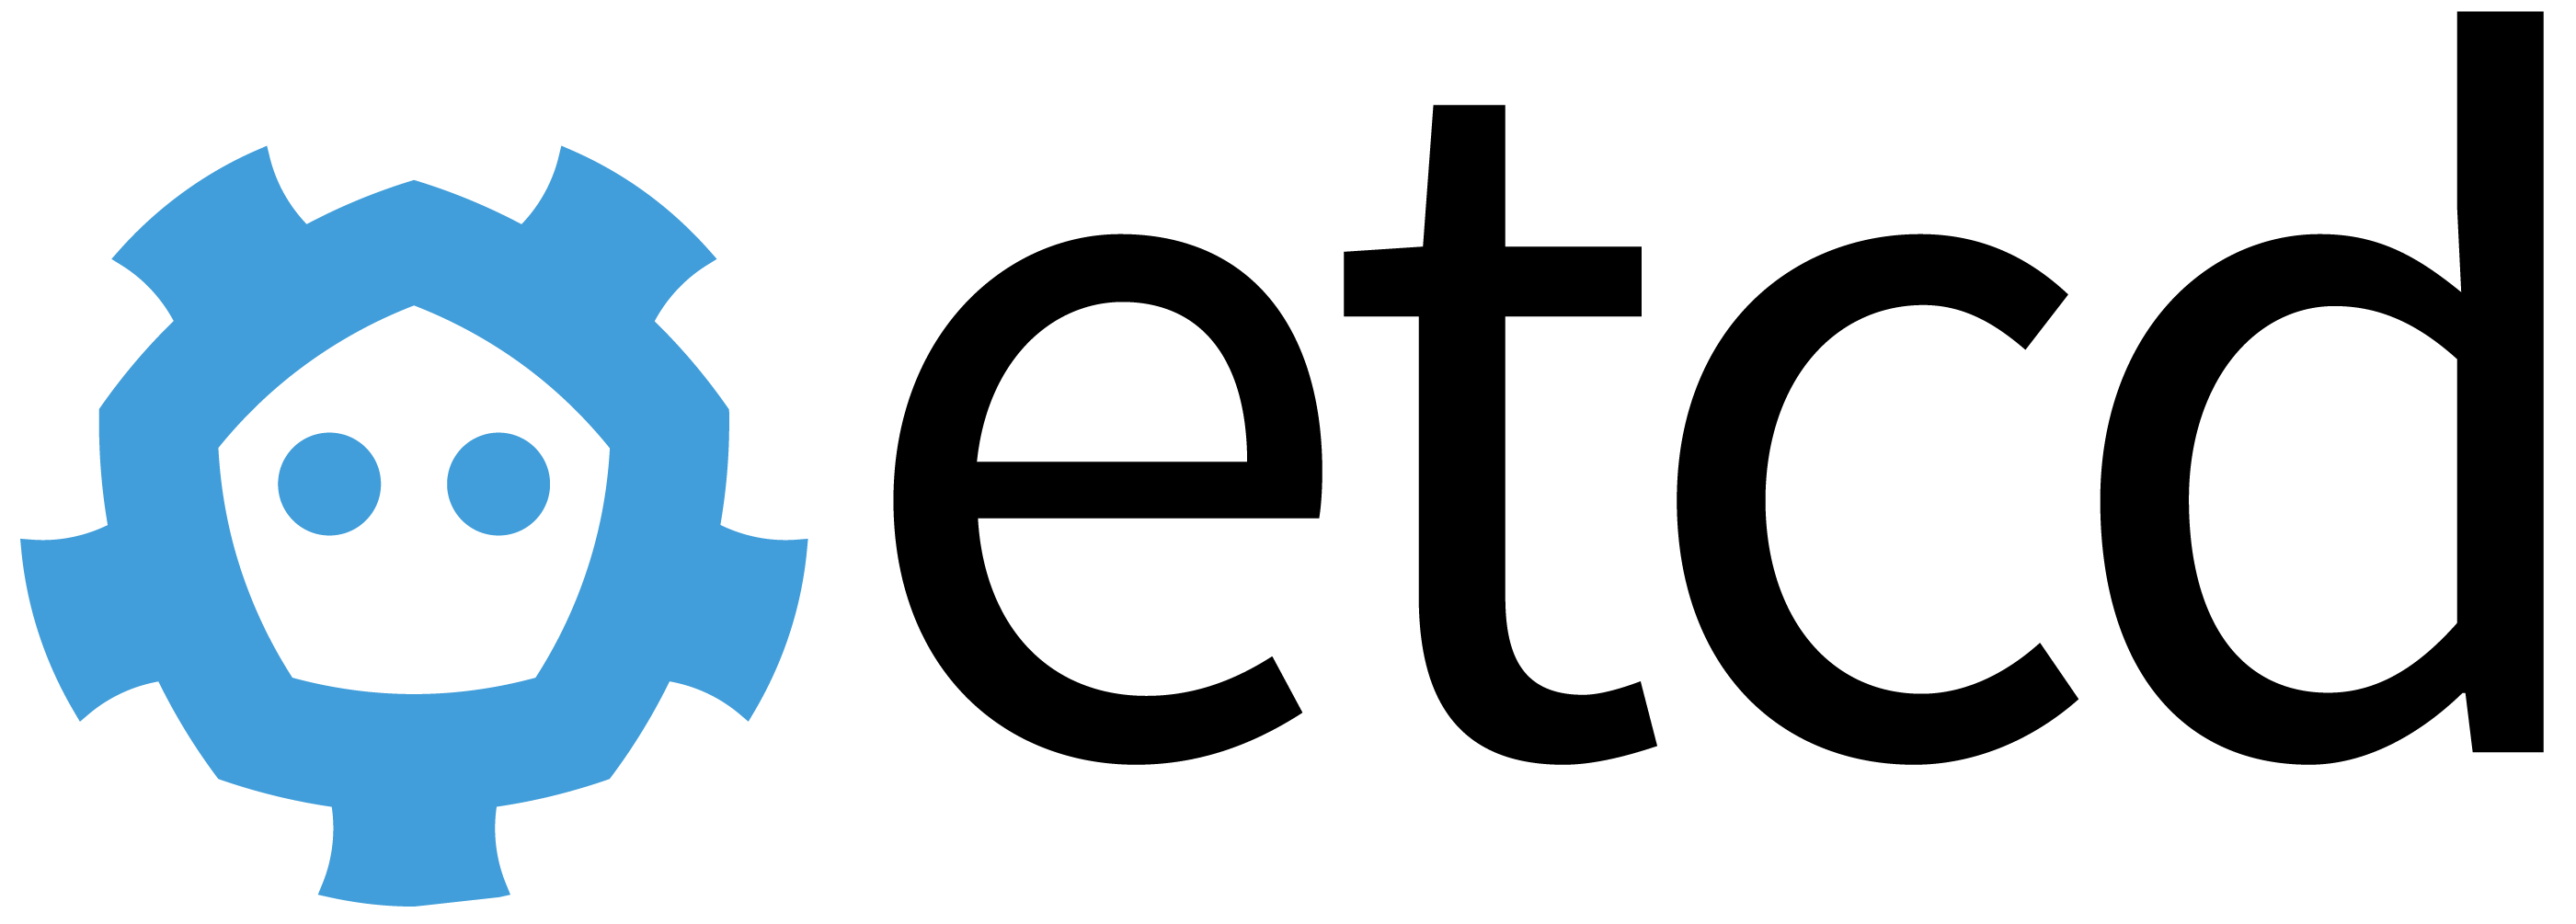 Etcd logo